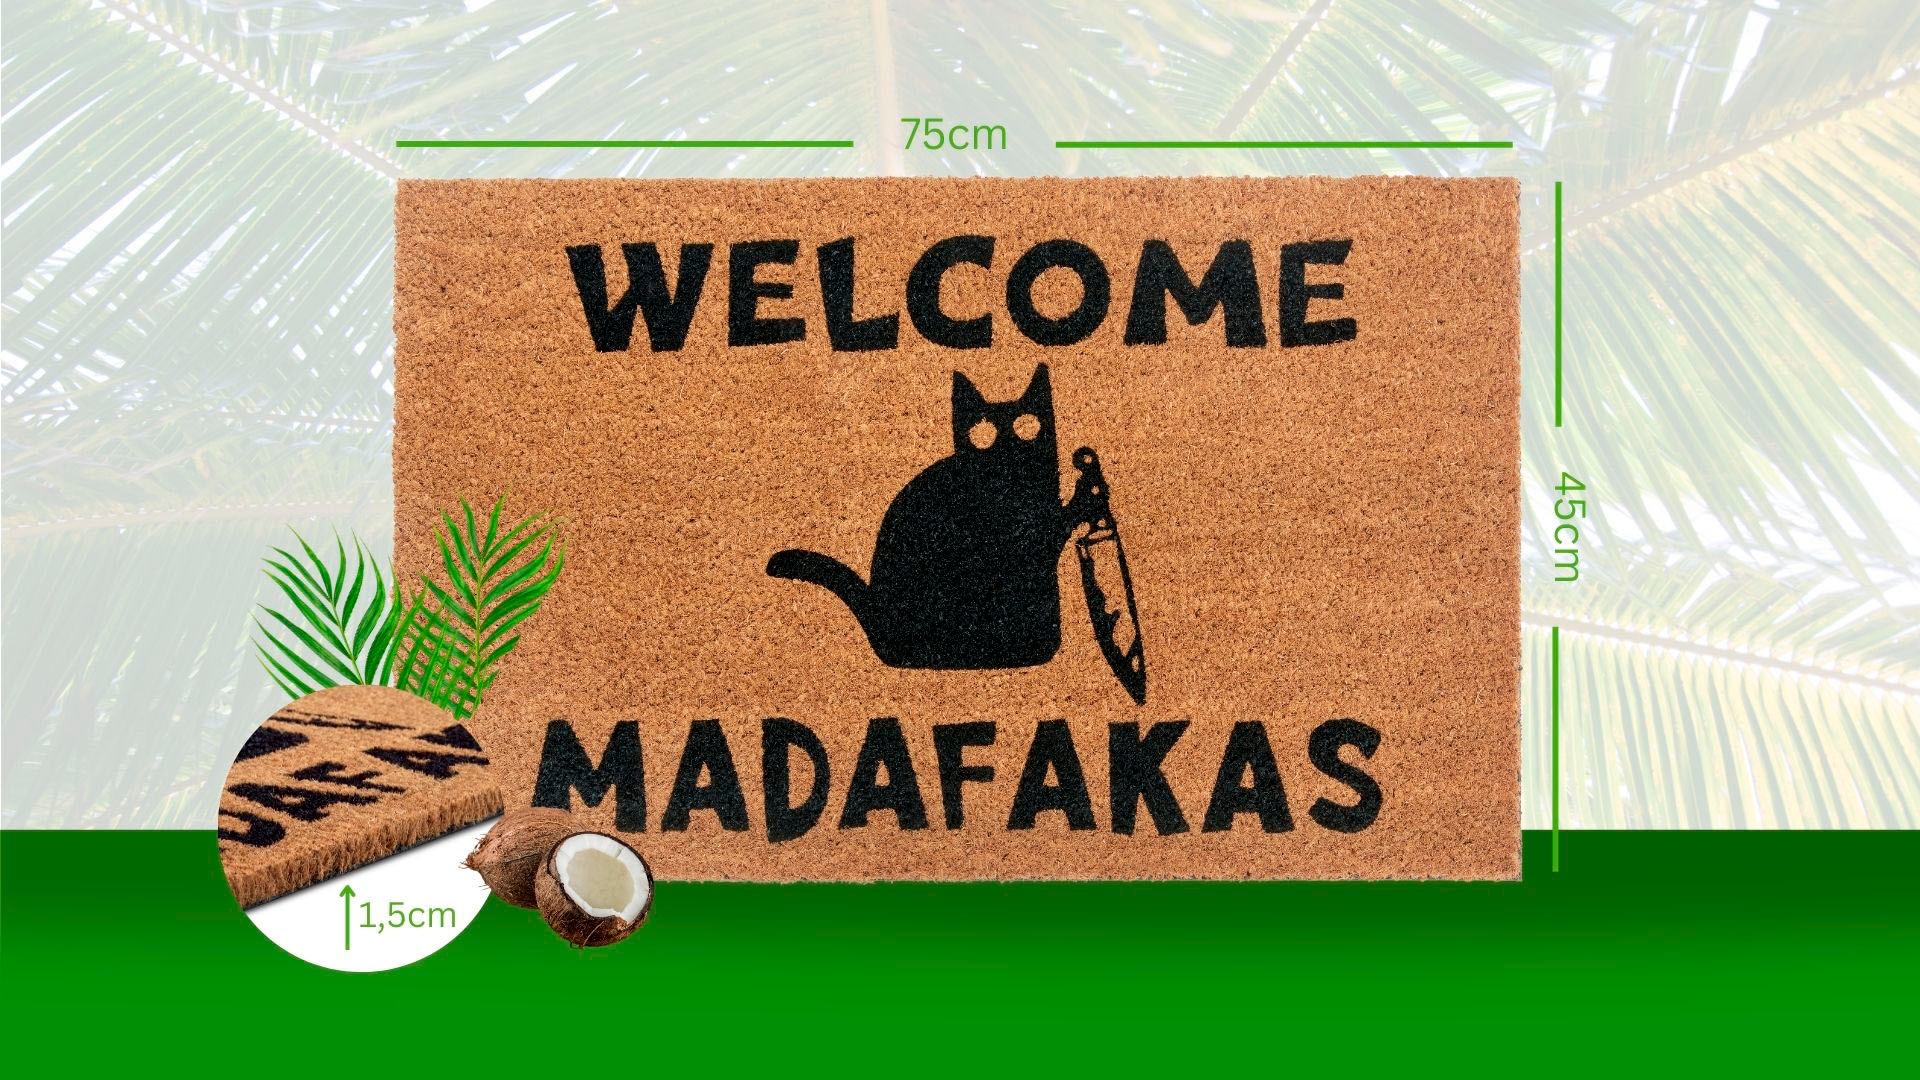 HANSE Home Fussmatte »Mix Mats Kokos Welcome Madafakas«, rechteckig, Kokos, Schmutzfangmatte, Outdoor, Rutschfest, Innen, Kokosmatte, Flur